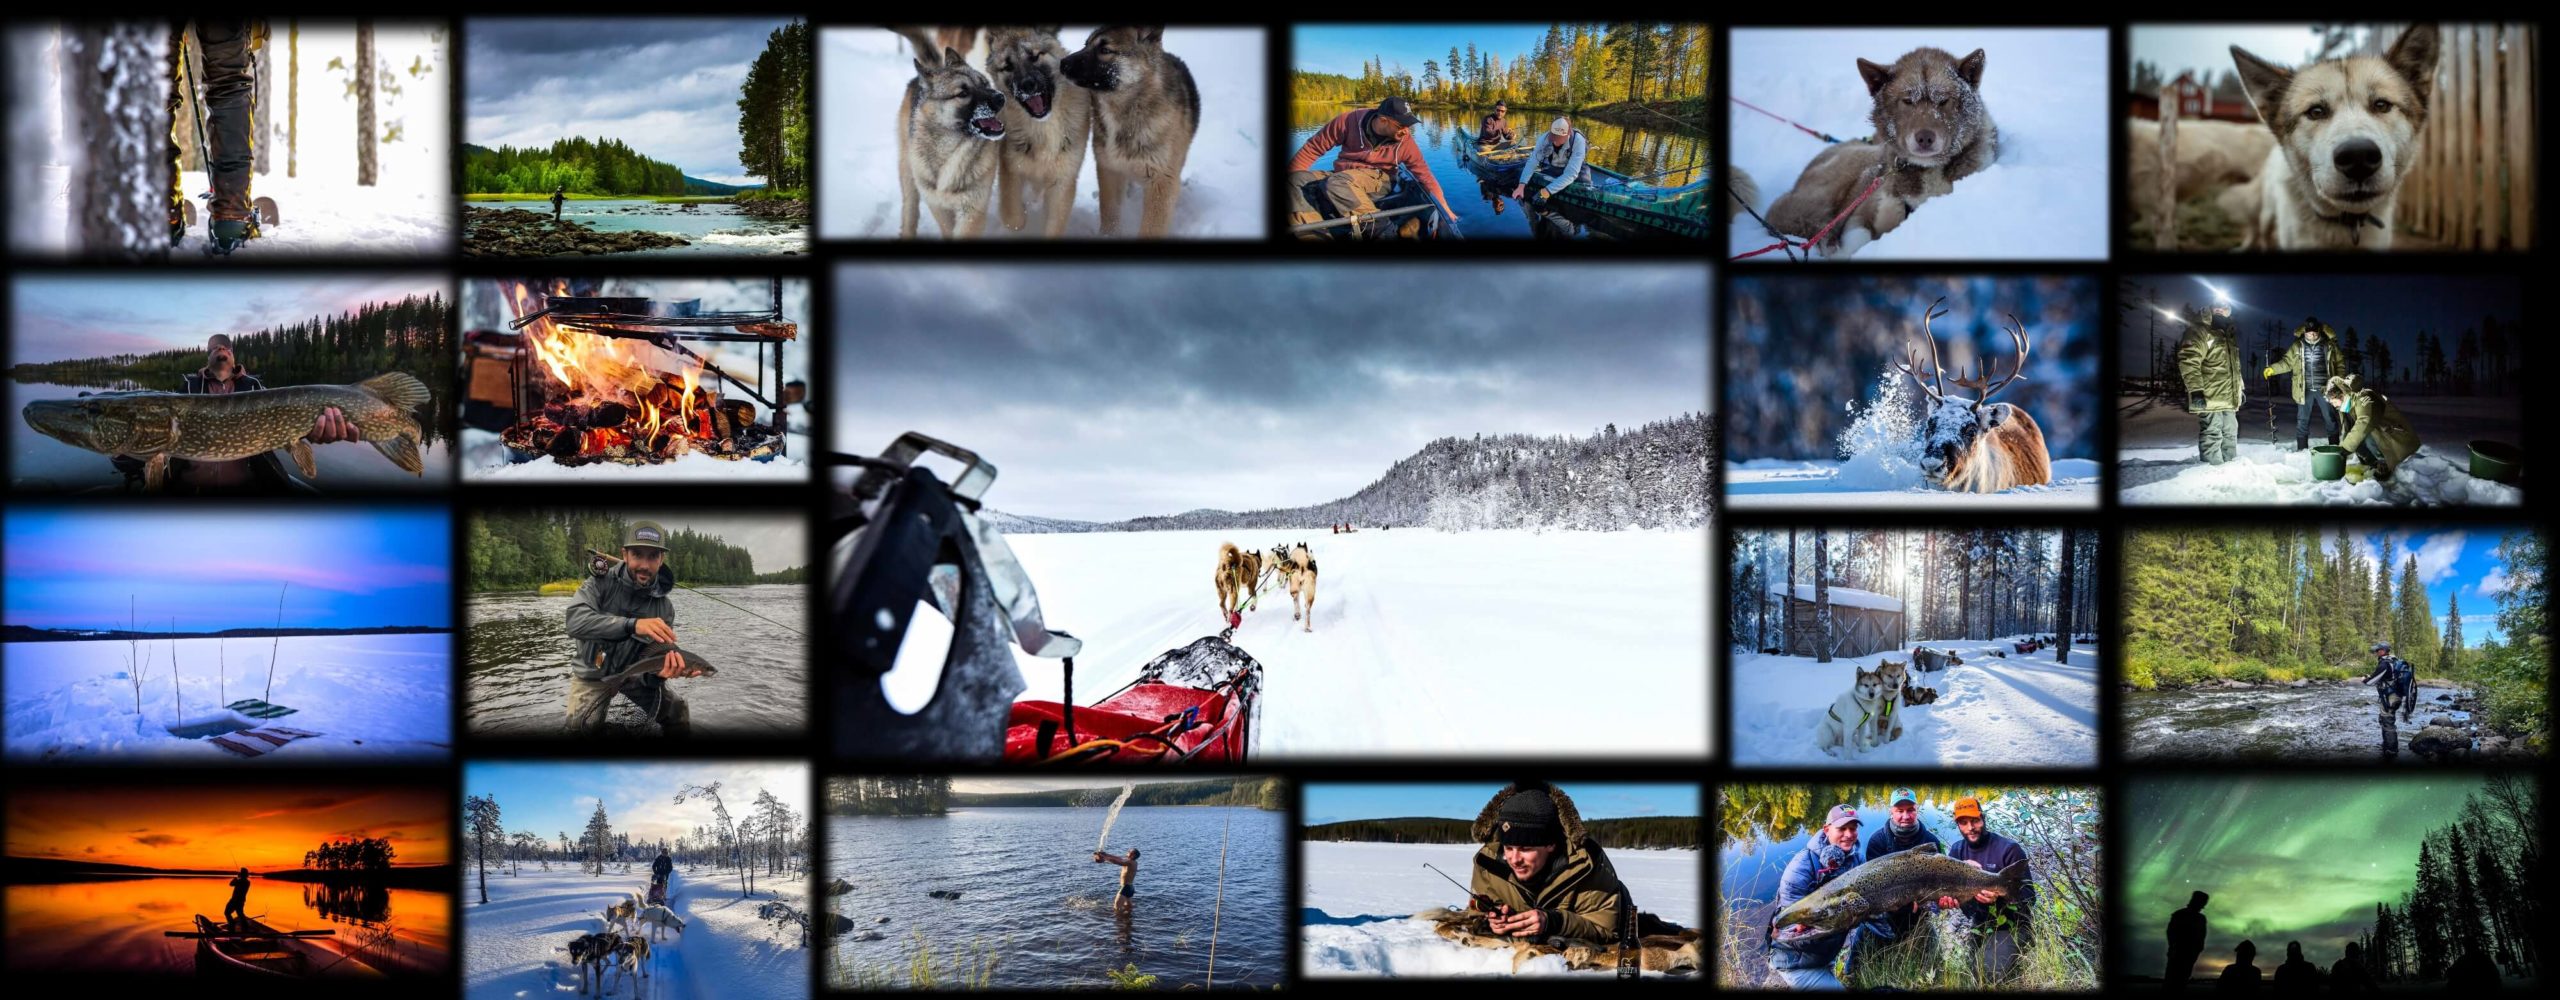 Collage de photos de séjours hiver et été en laponie suédoise